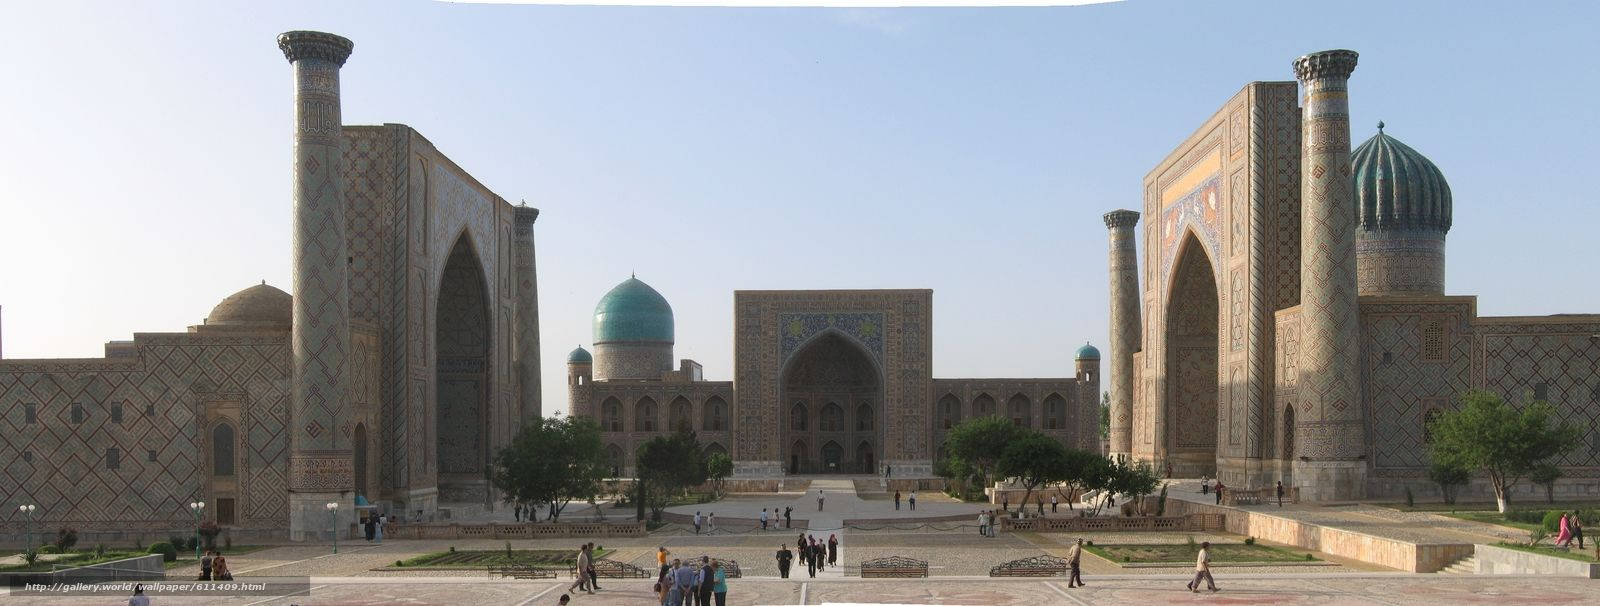 Registan Square Facade In Samarkand Wallpaper